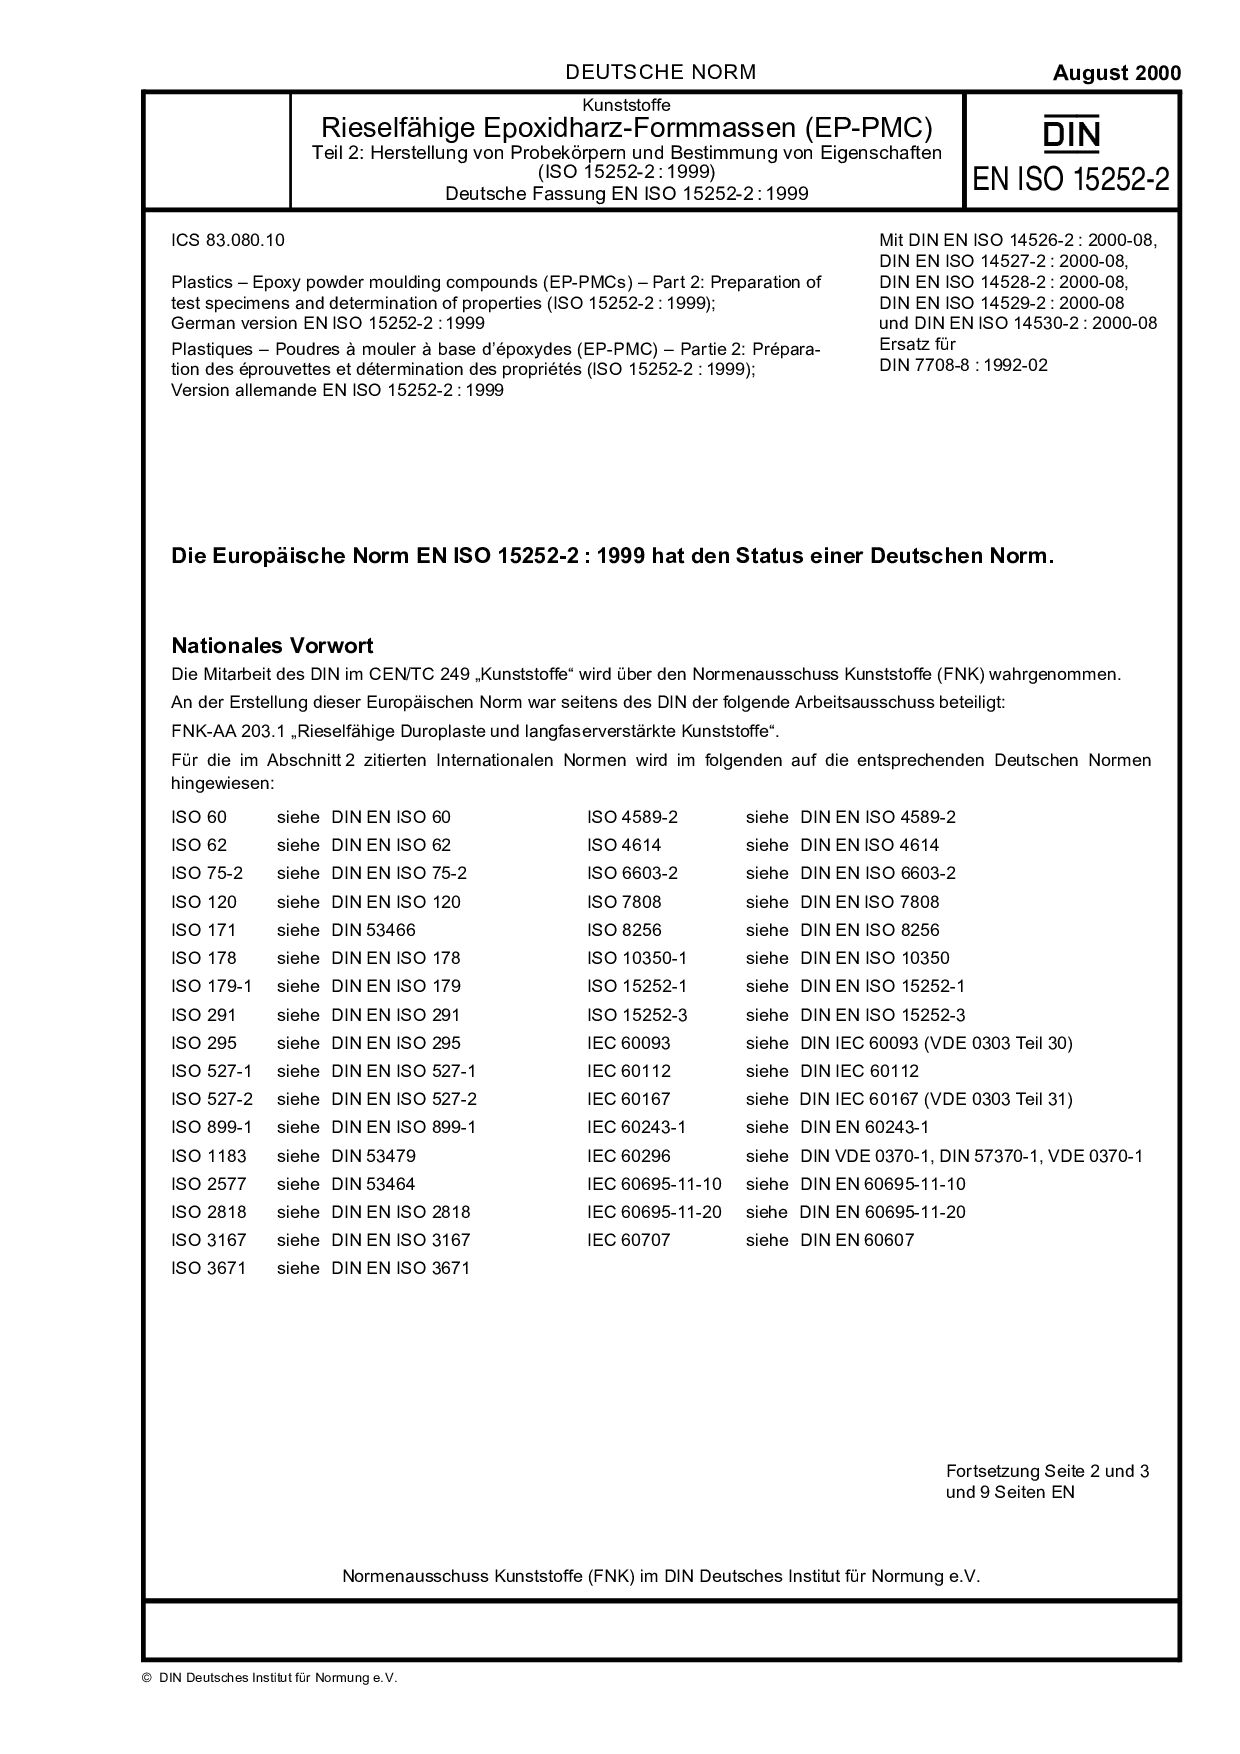 DIN EN ISO 15252-2:2000-08封面图